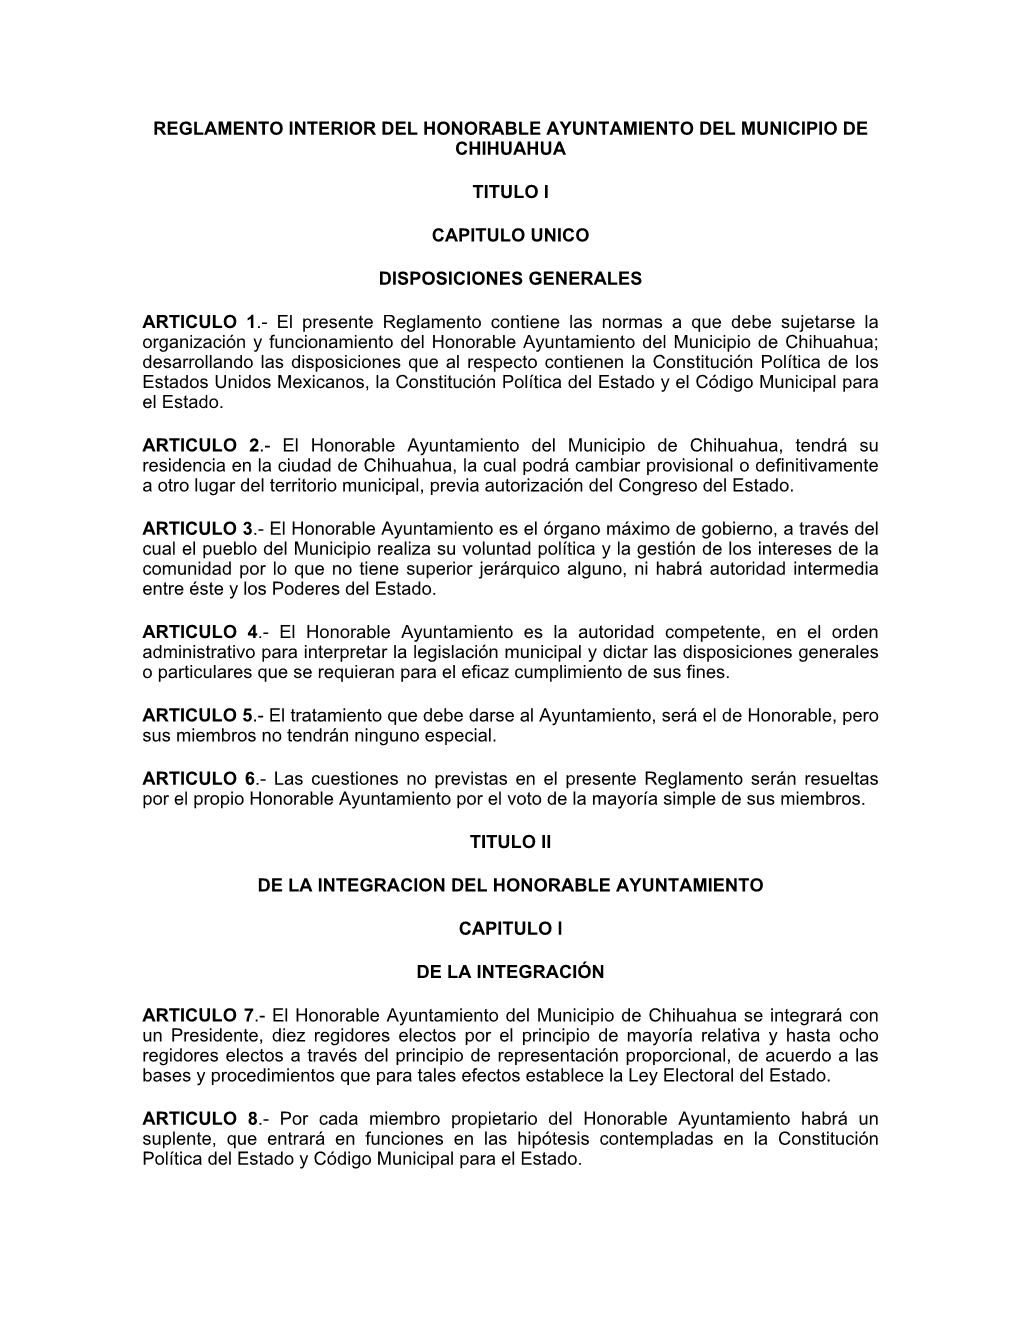 Reglamento Interior Del Honorable Ayuntamiento Del Municipio De Chihuahua